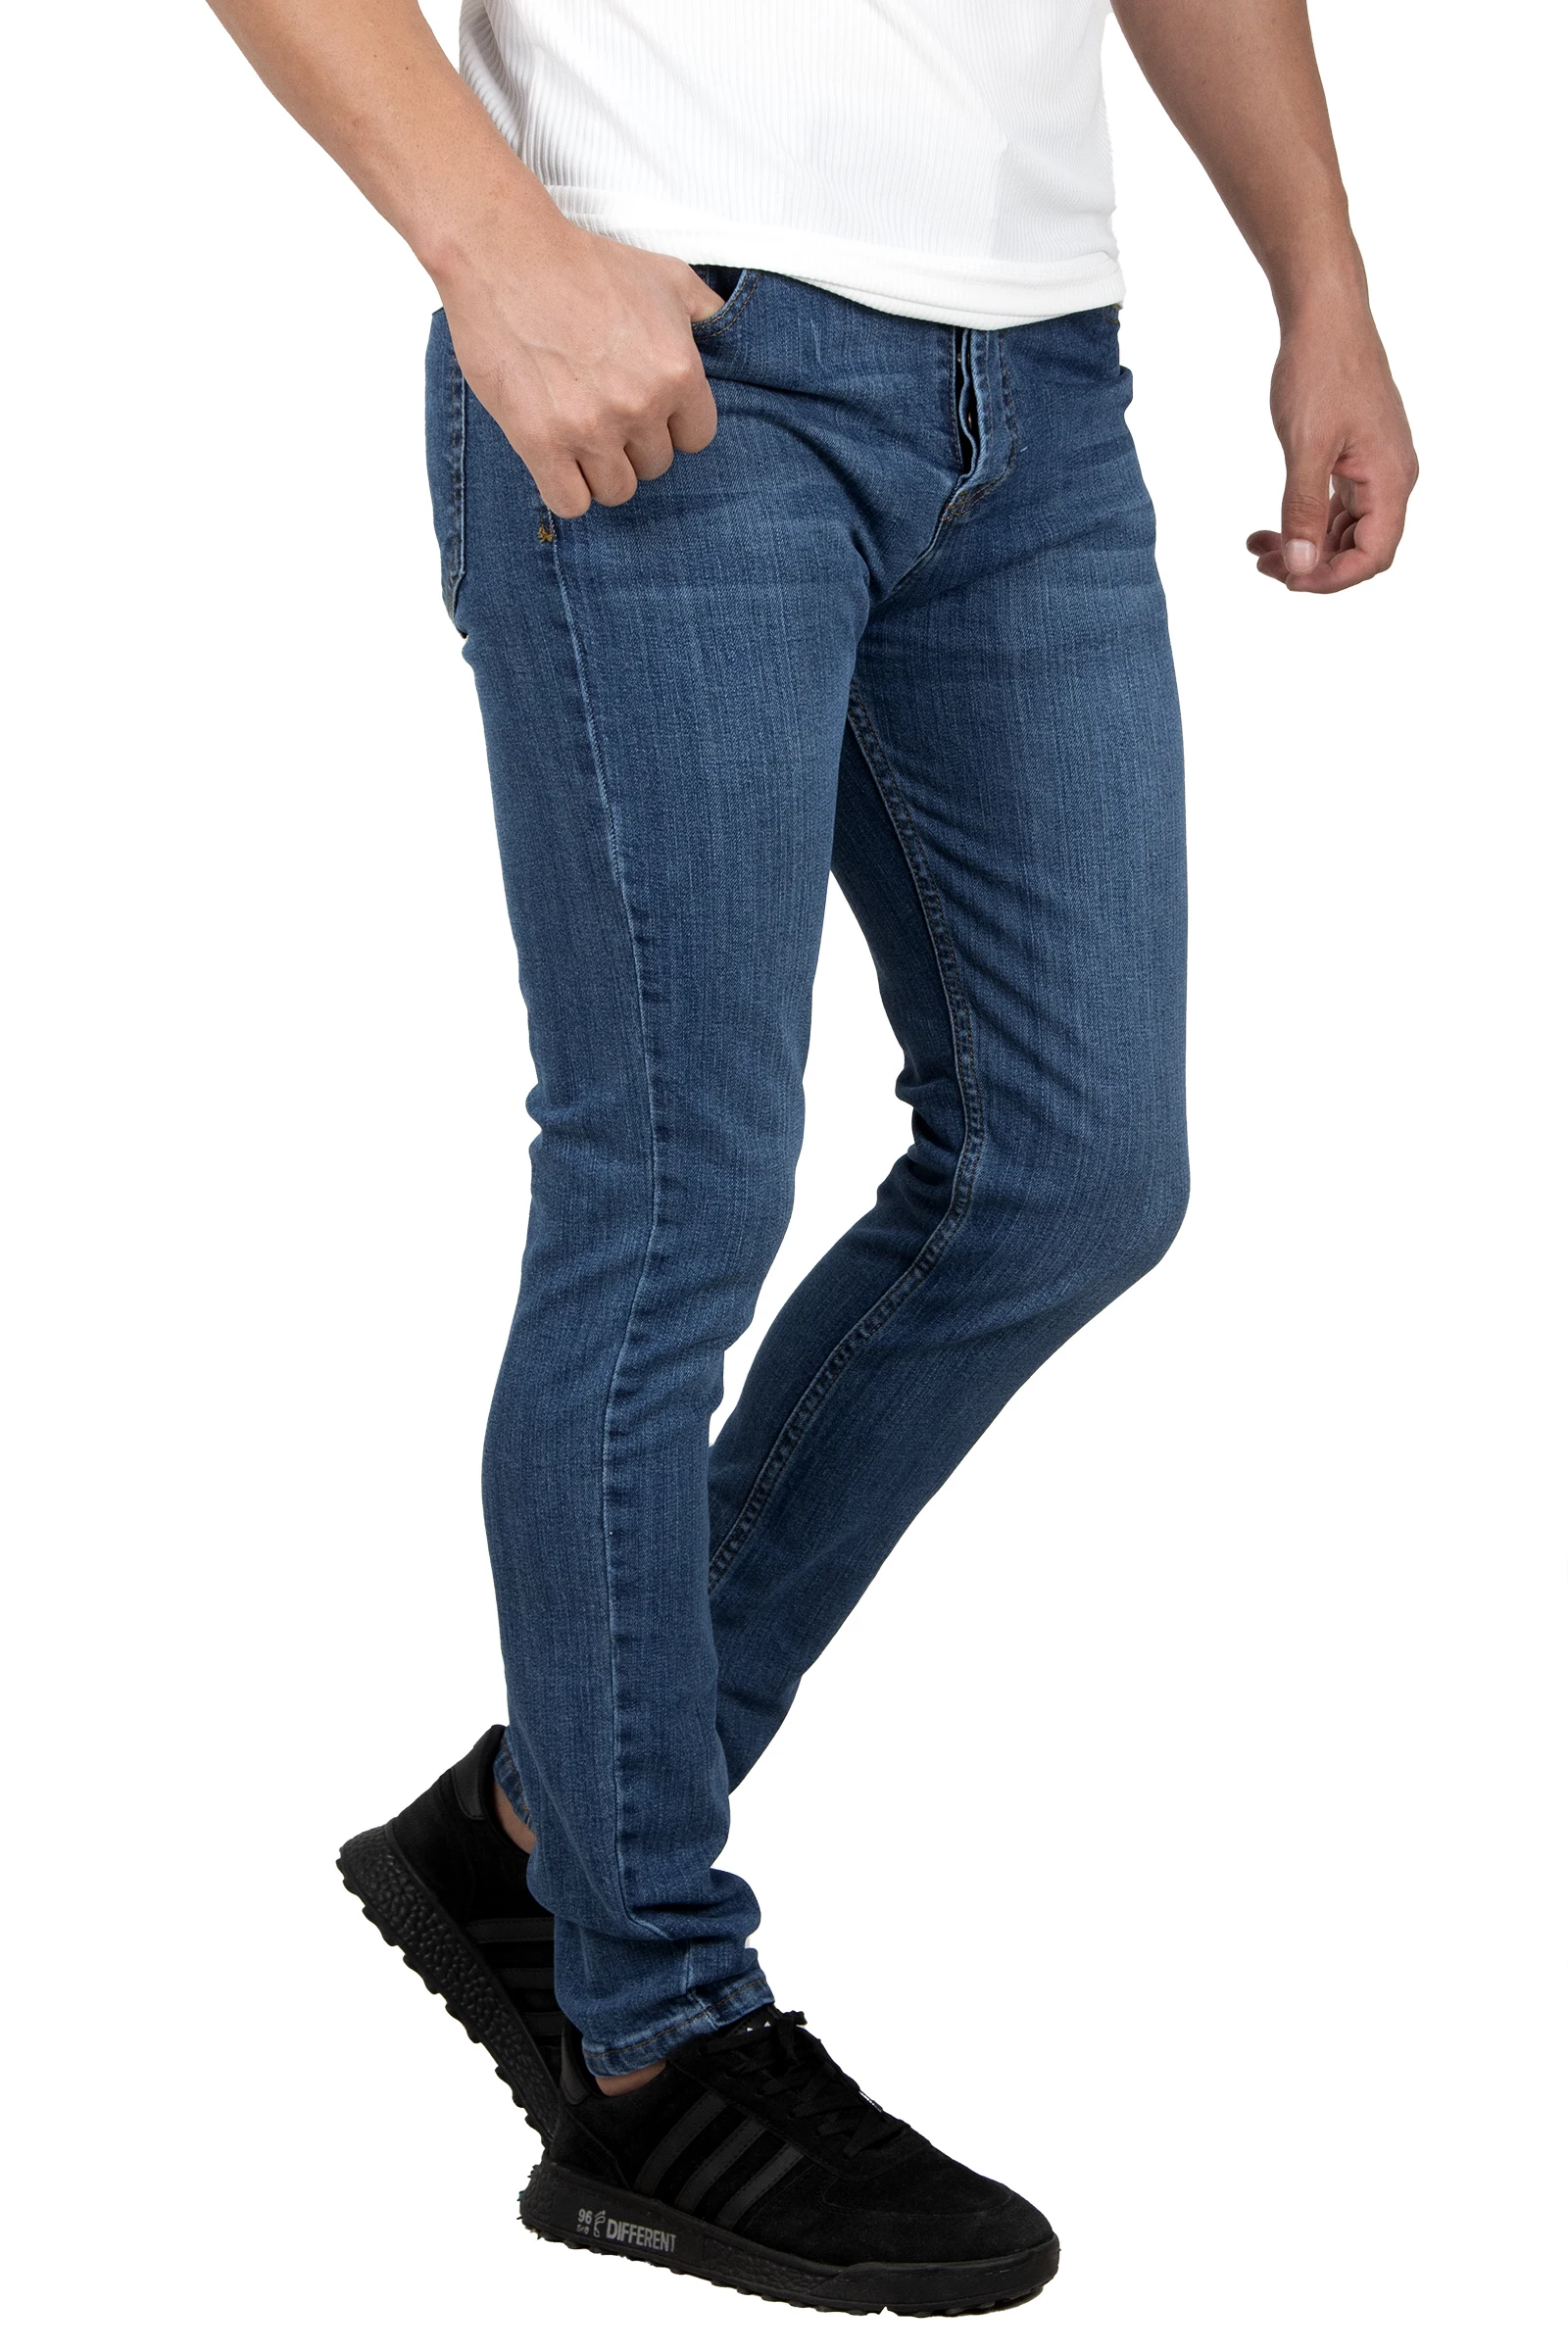 

DeepSEA New Season Lycra Stoned Jeans Pants 2302093